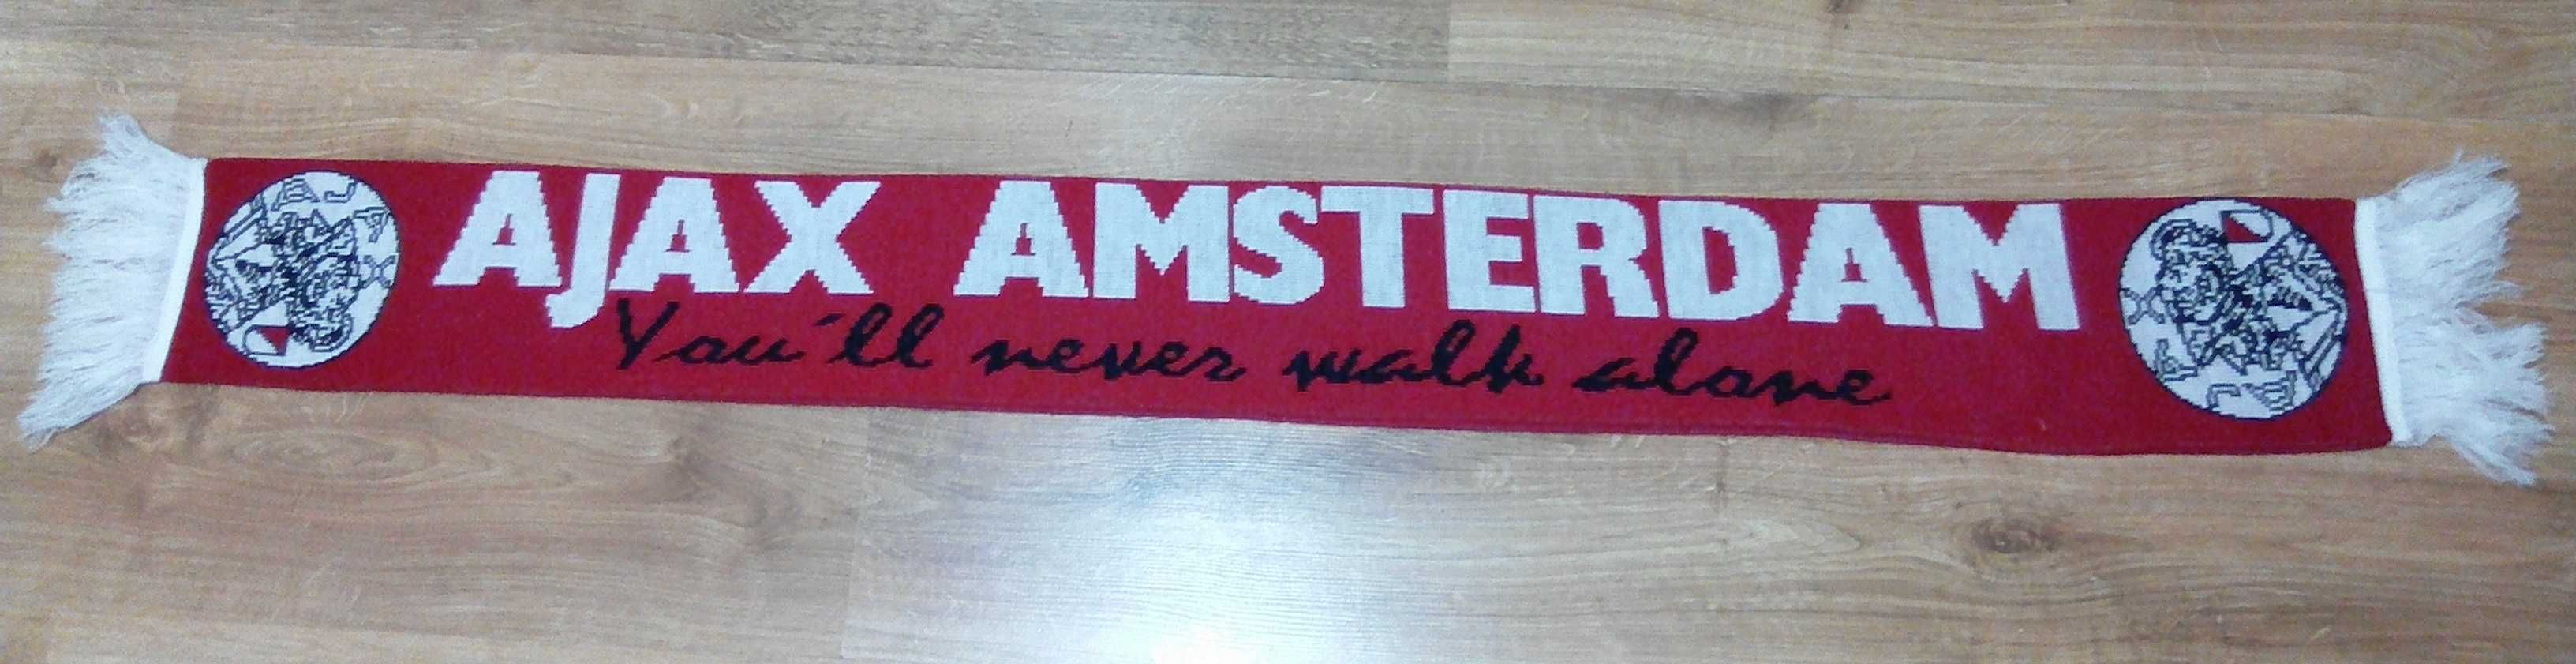 Аякс Амстердам Ajax Amsterdam шарф